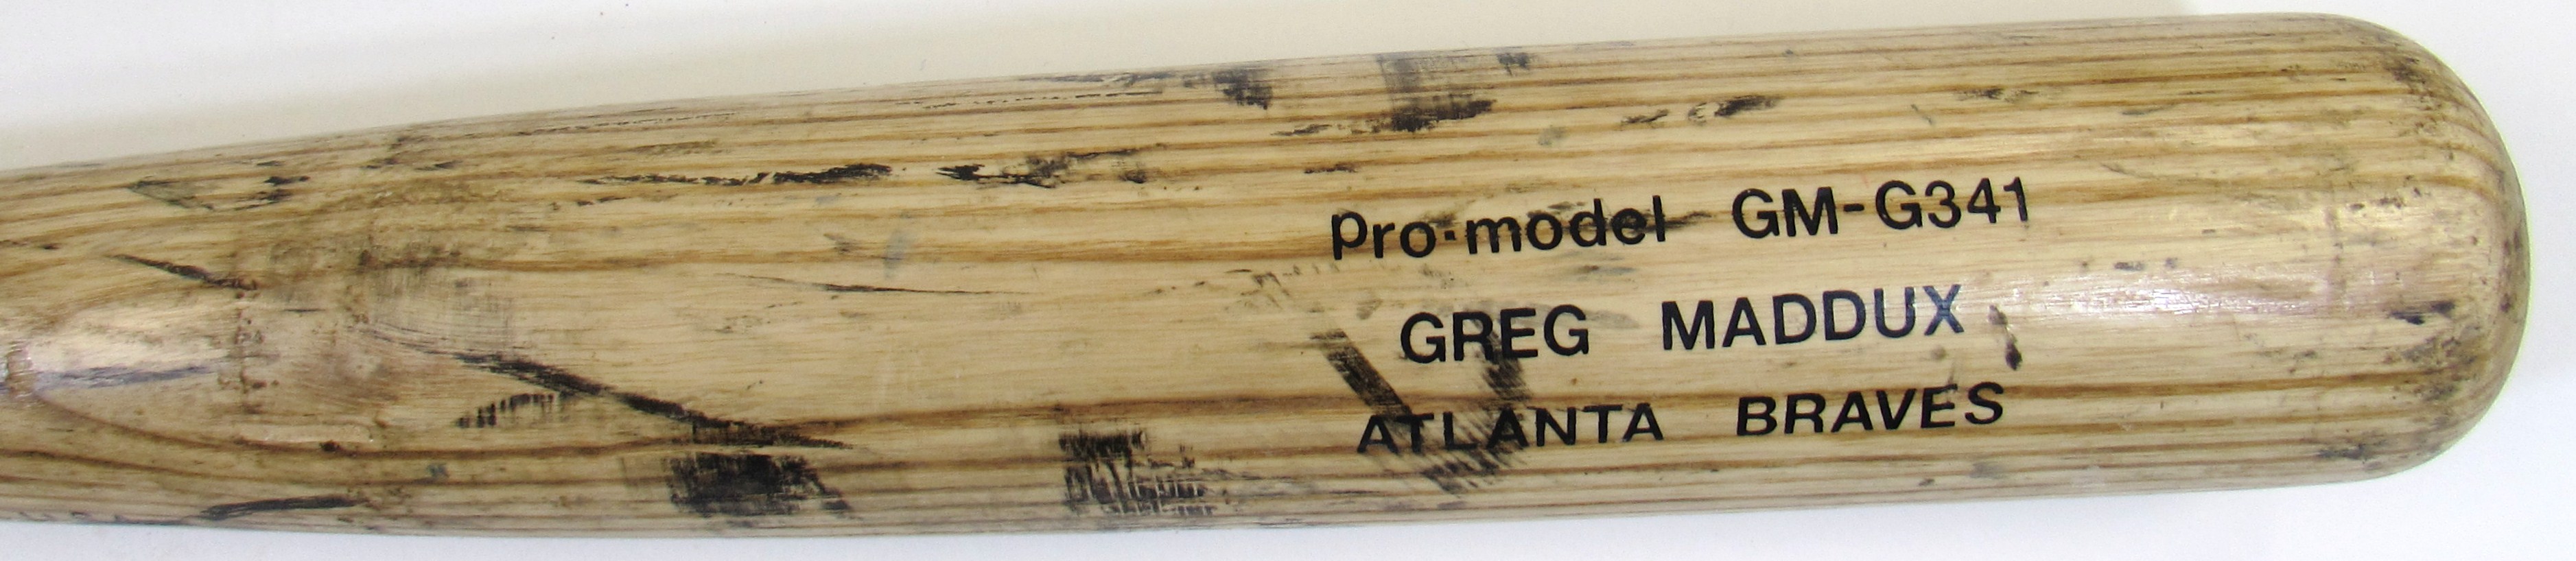 Lot Detail - 1995 Greg Maddux Atlanta Braves Game Worn Road Jersey